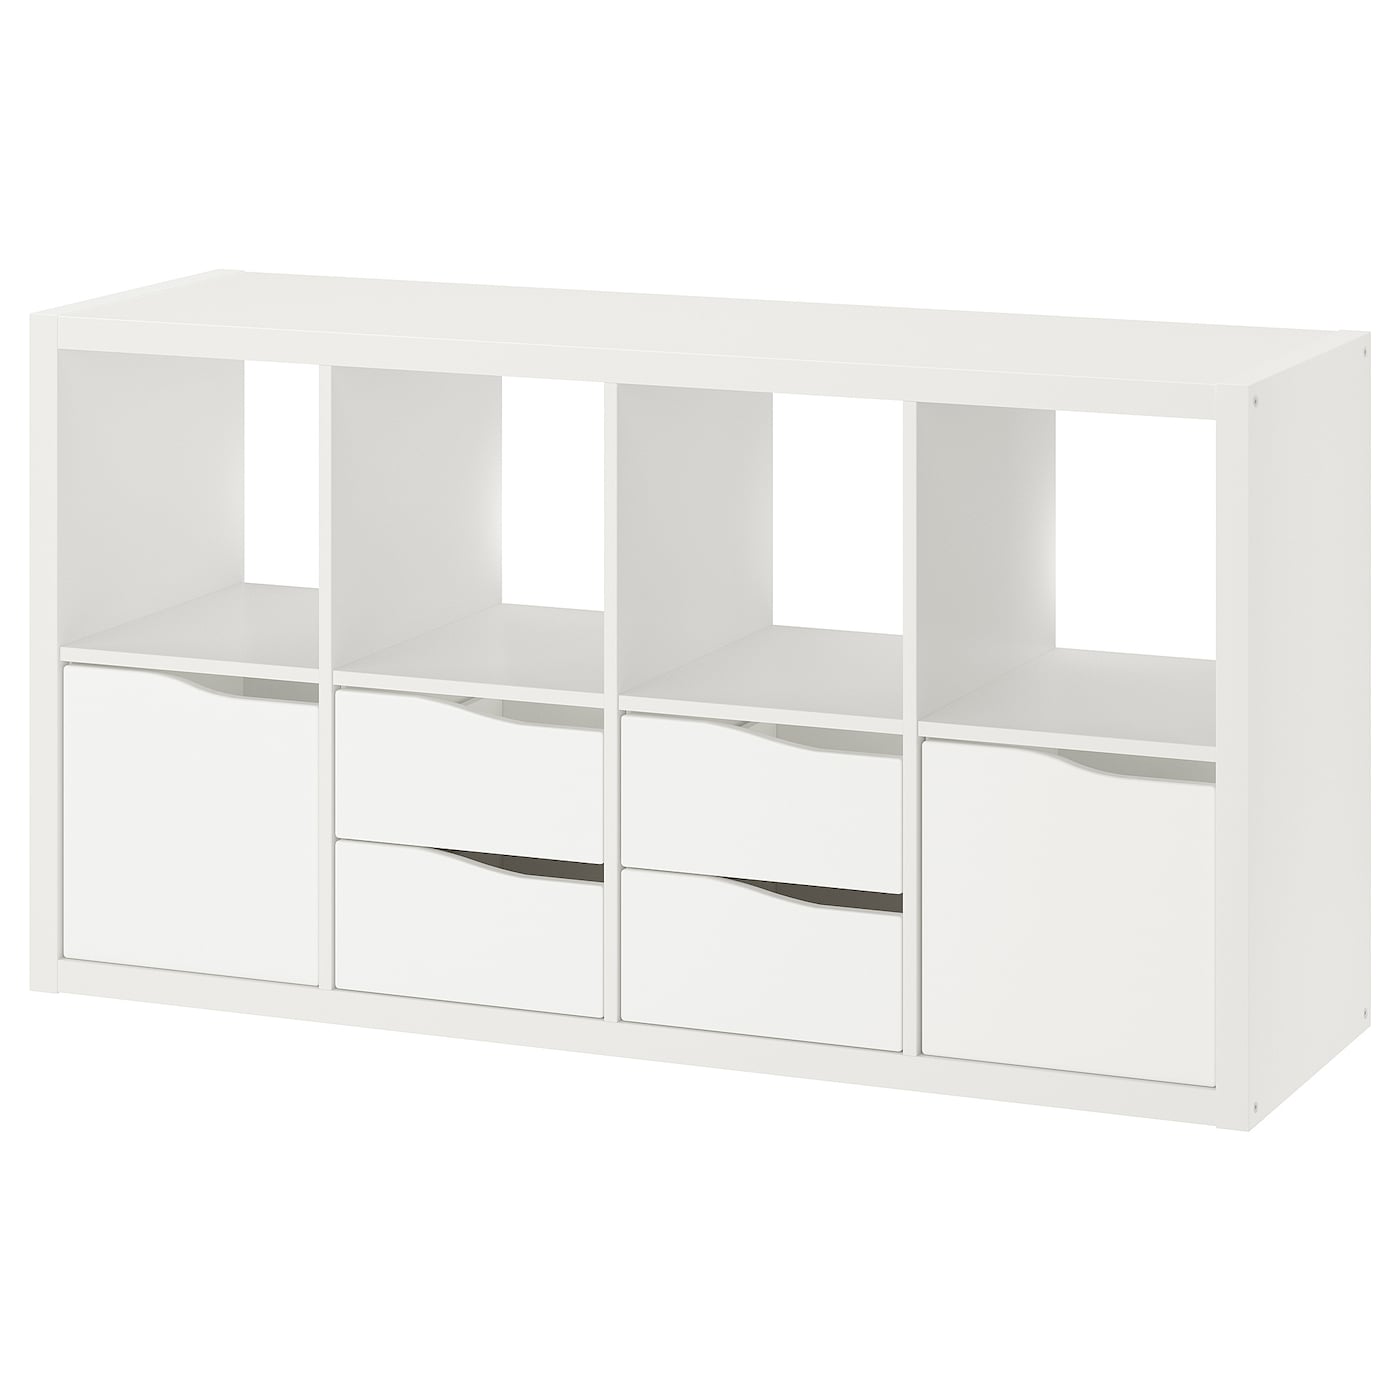 Книжный шкаф - IKEA KALLAX, 147х39х77 см, белый, КАЛЛАКС ИКЕА